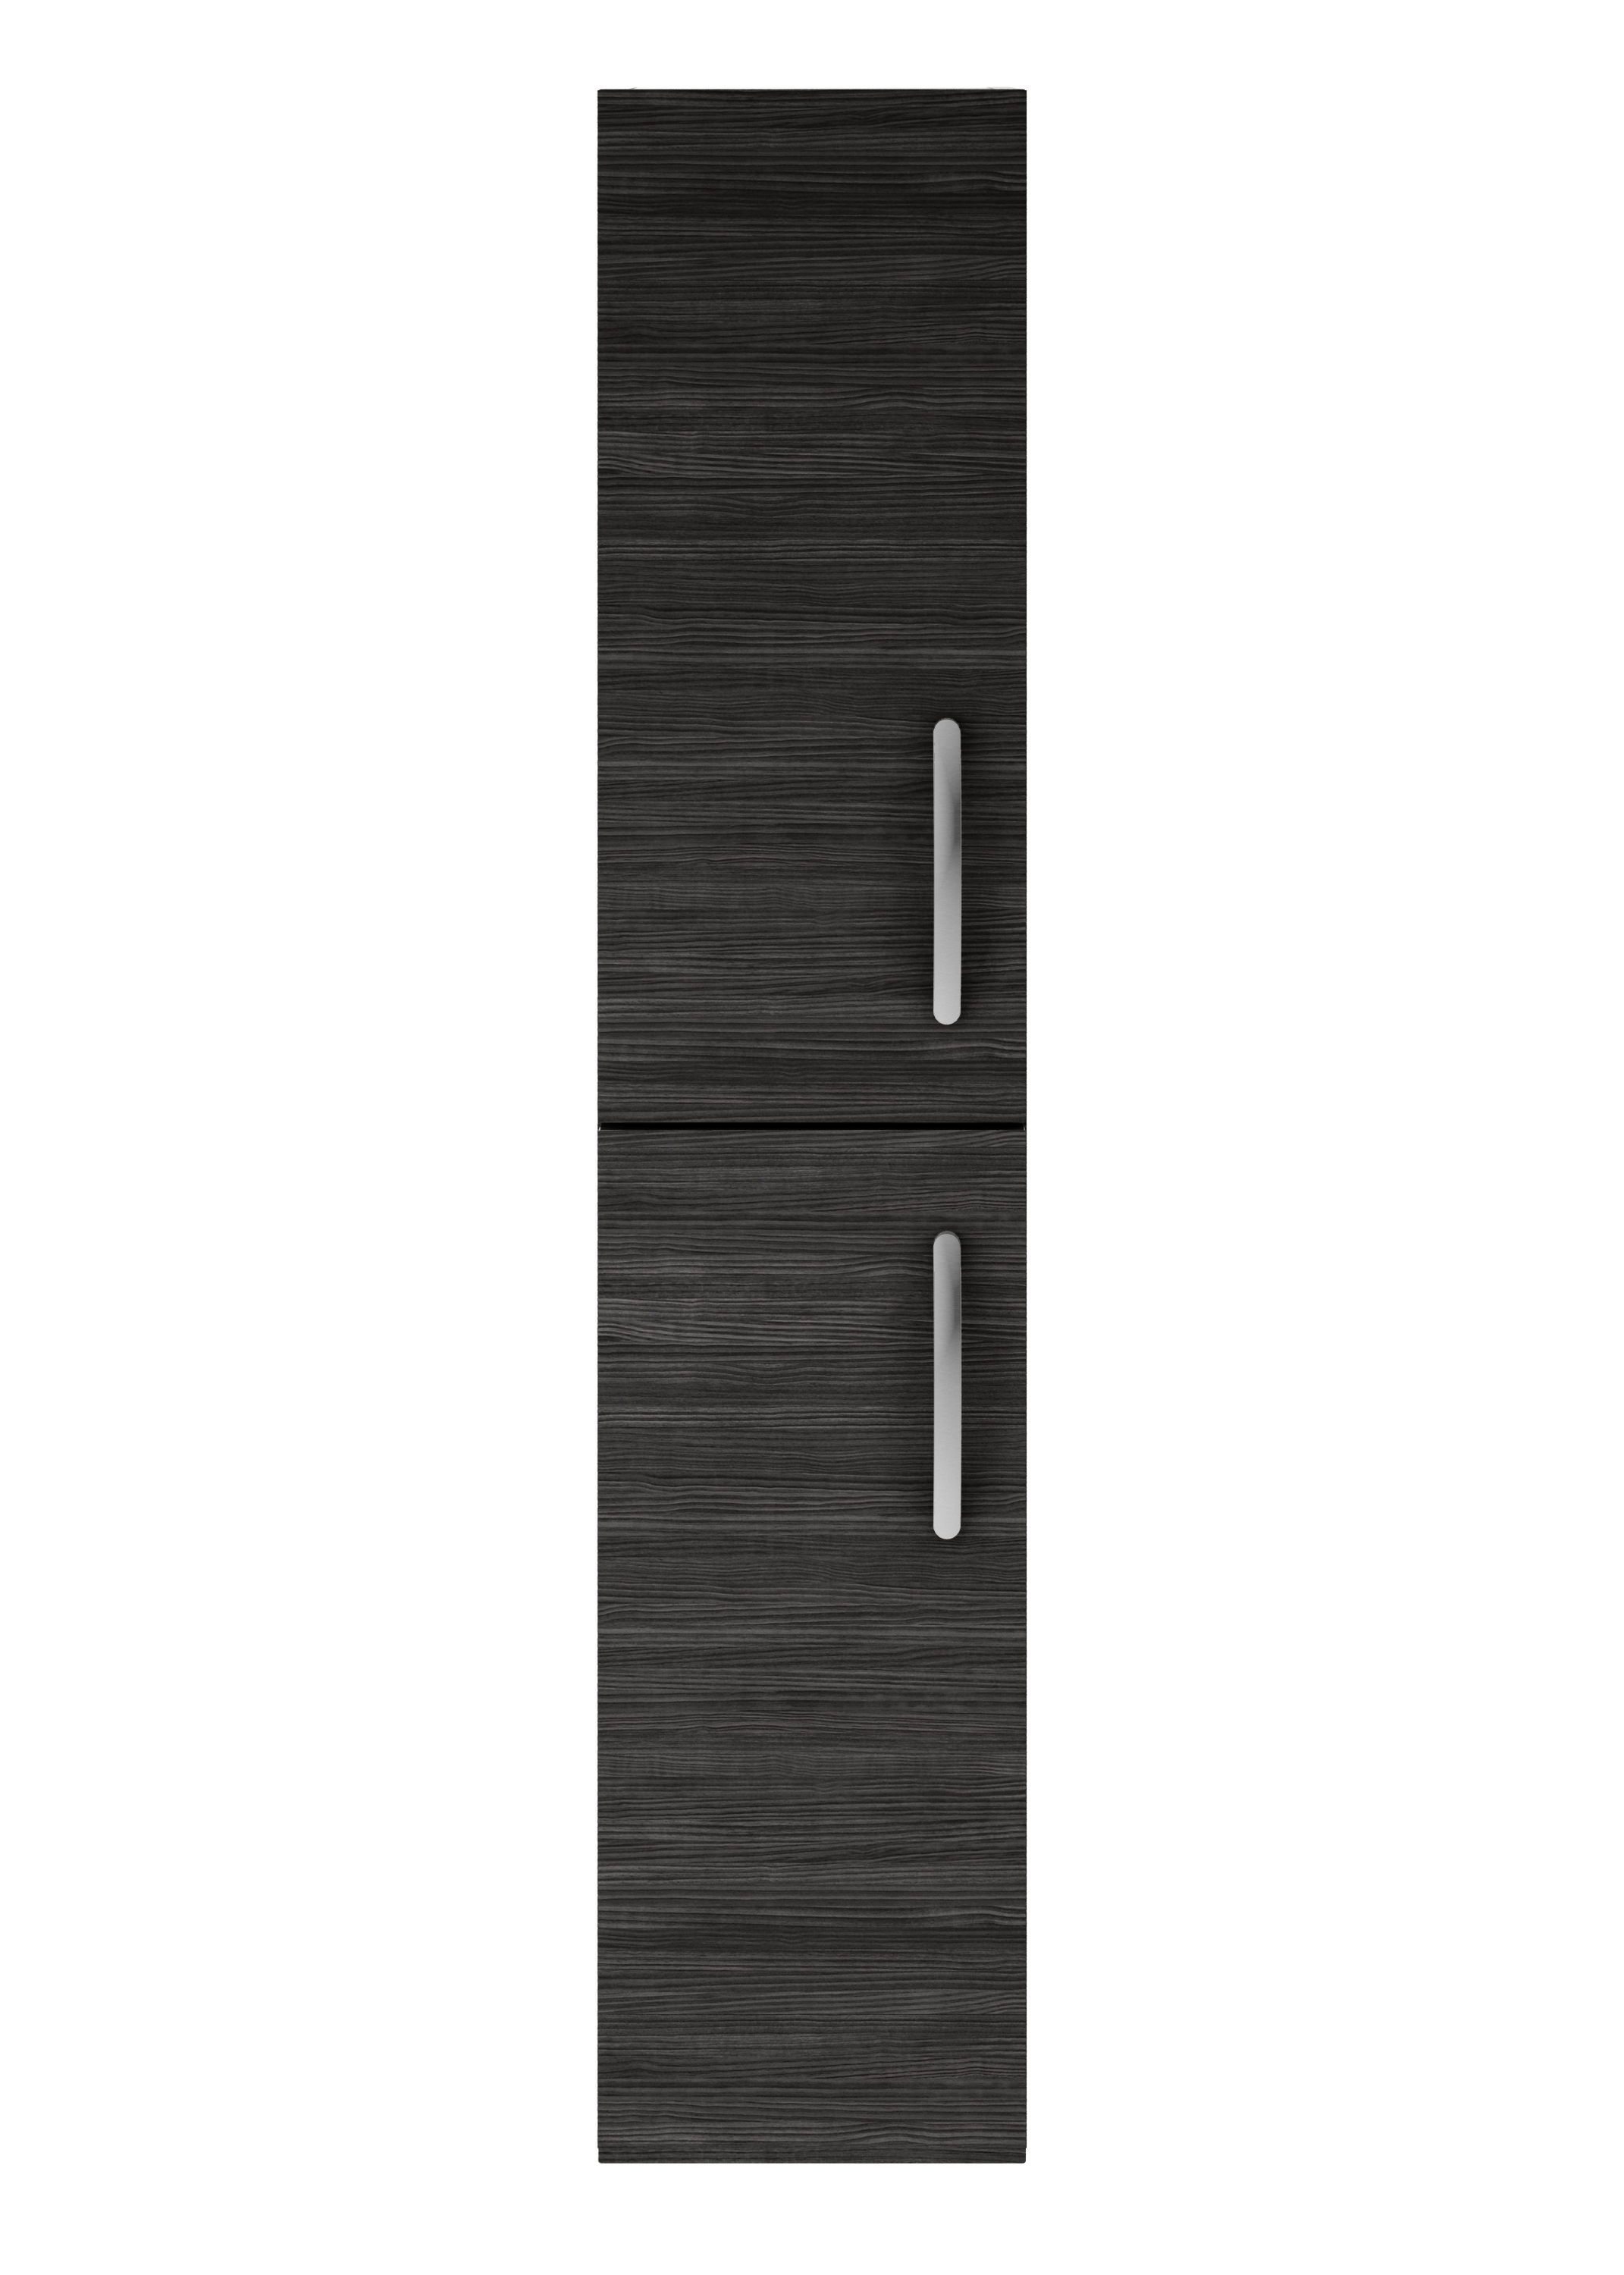 Nuie Athena Hacienda Black Contemporary 300mm Tall Unit (2 Door) - MOD662 